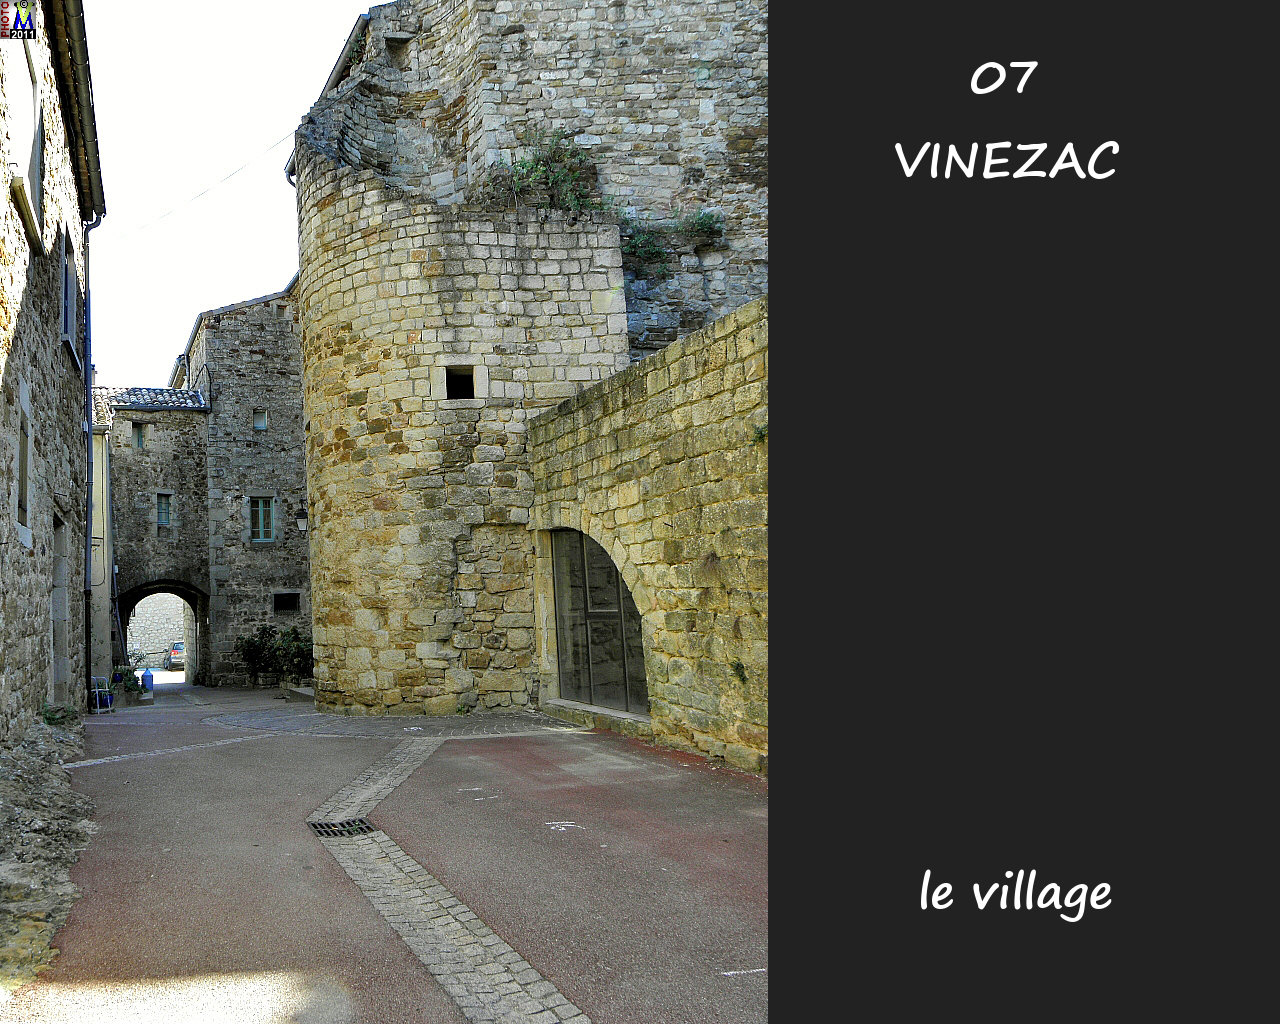 07VINEZAC_village_148.jpg